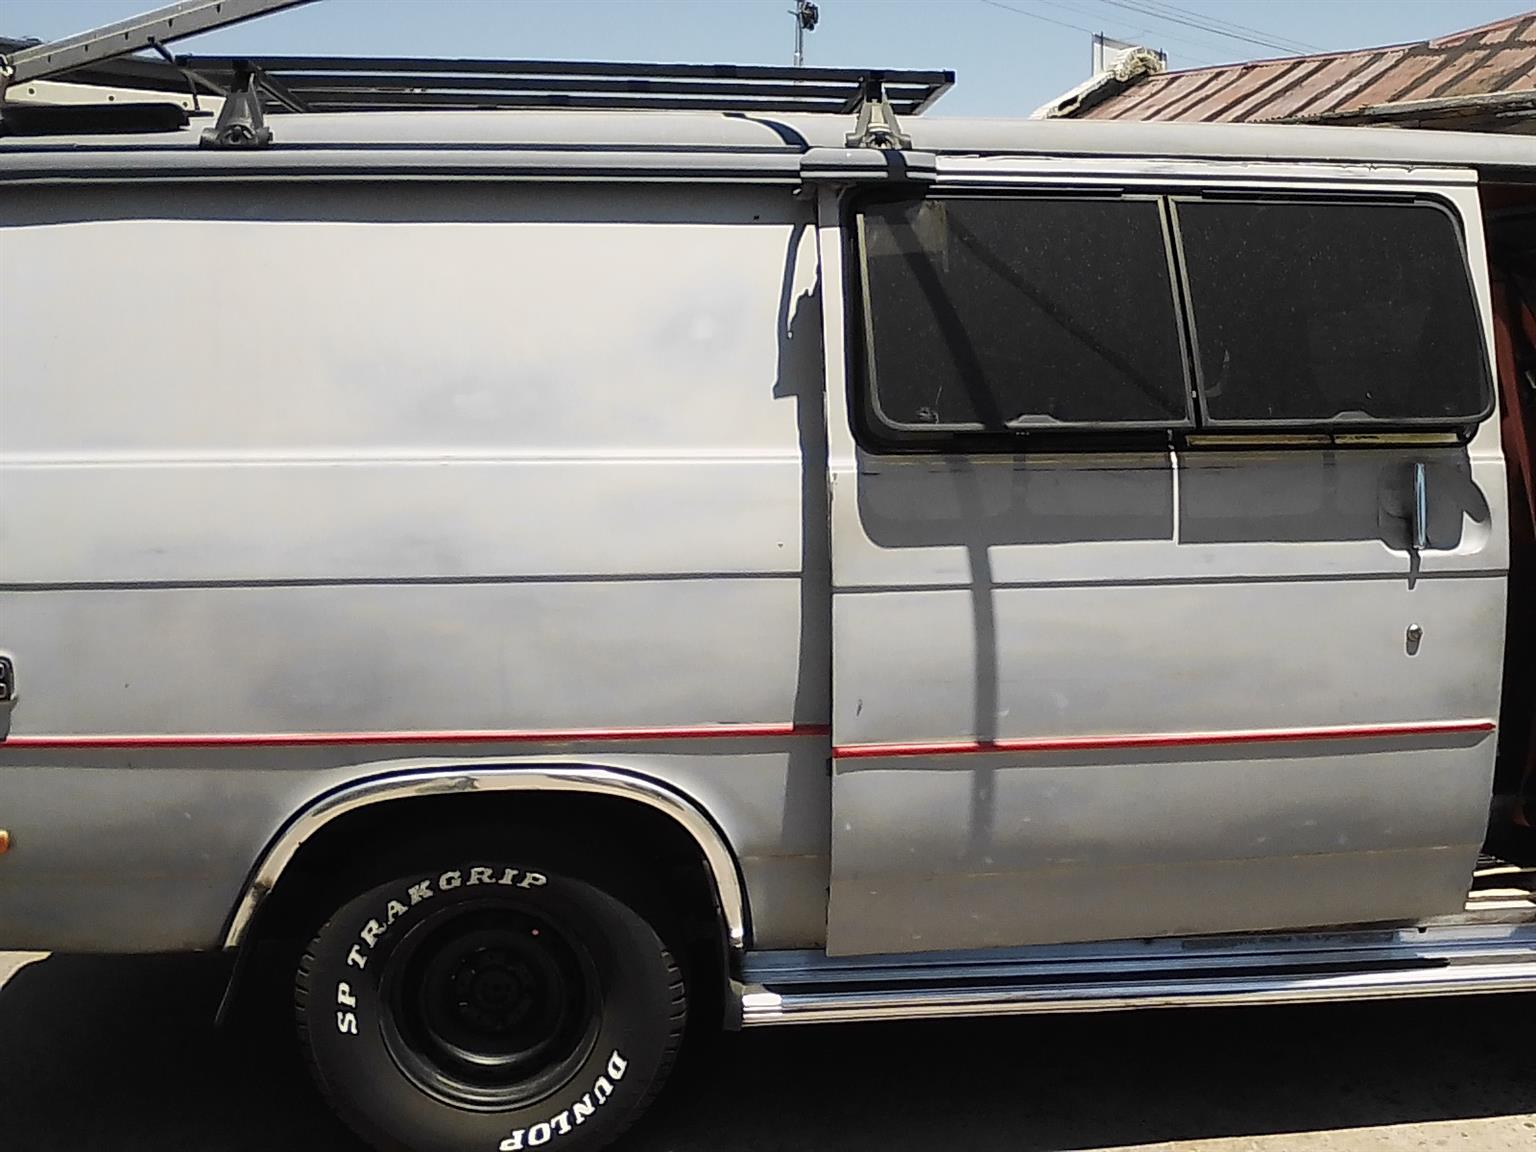 Chevy nomad van